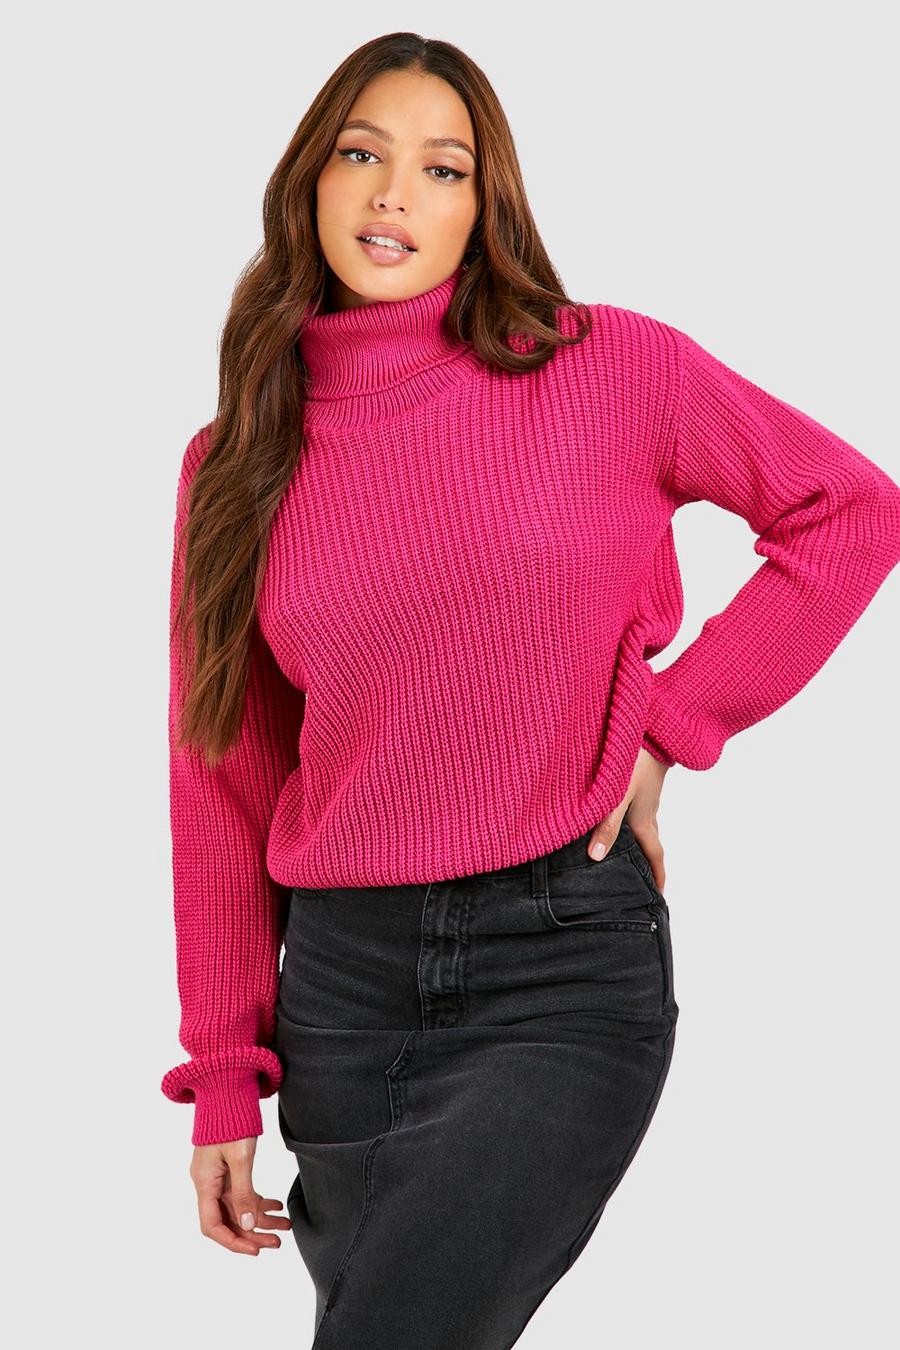 Tall kurzer Basic Pullover mit Rollkragen, Hot pink